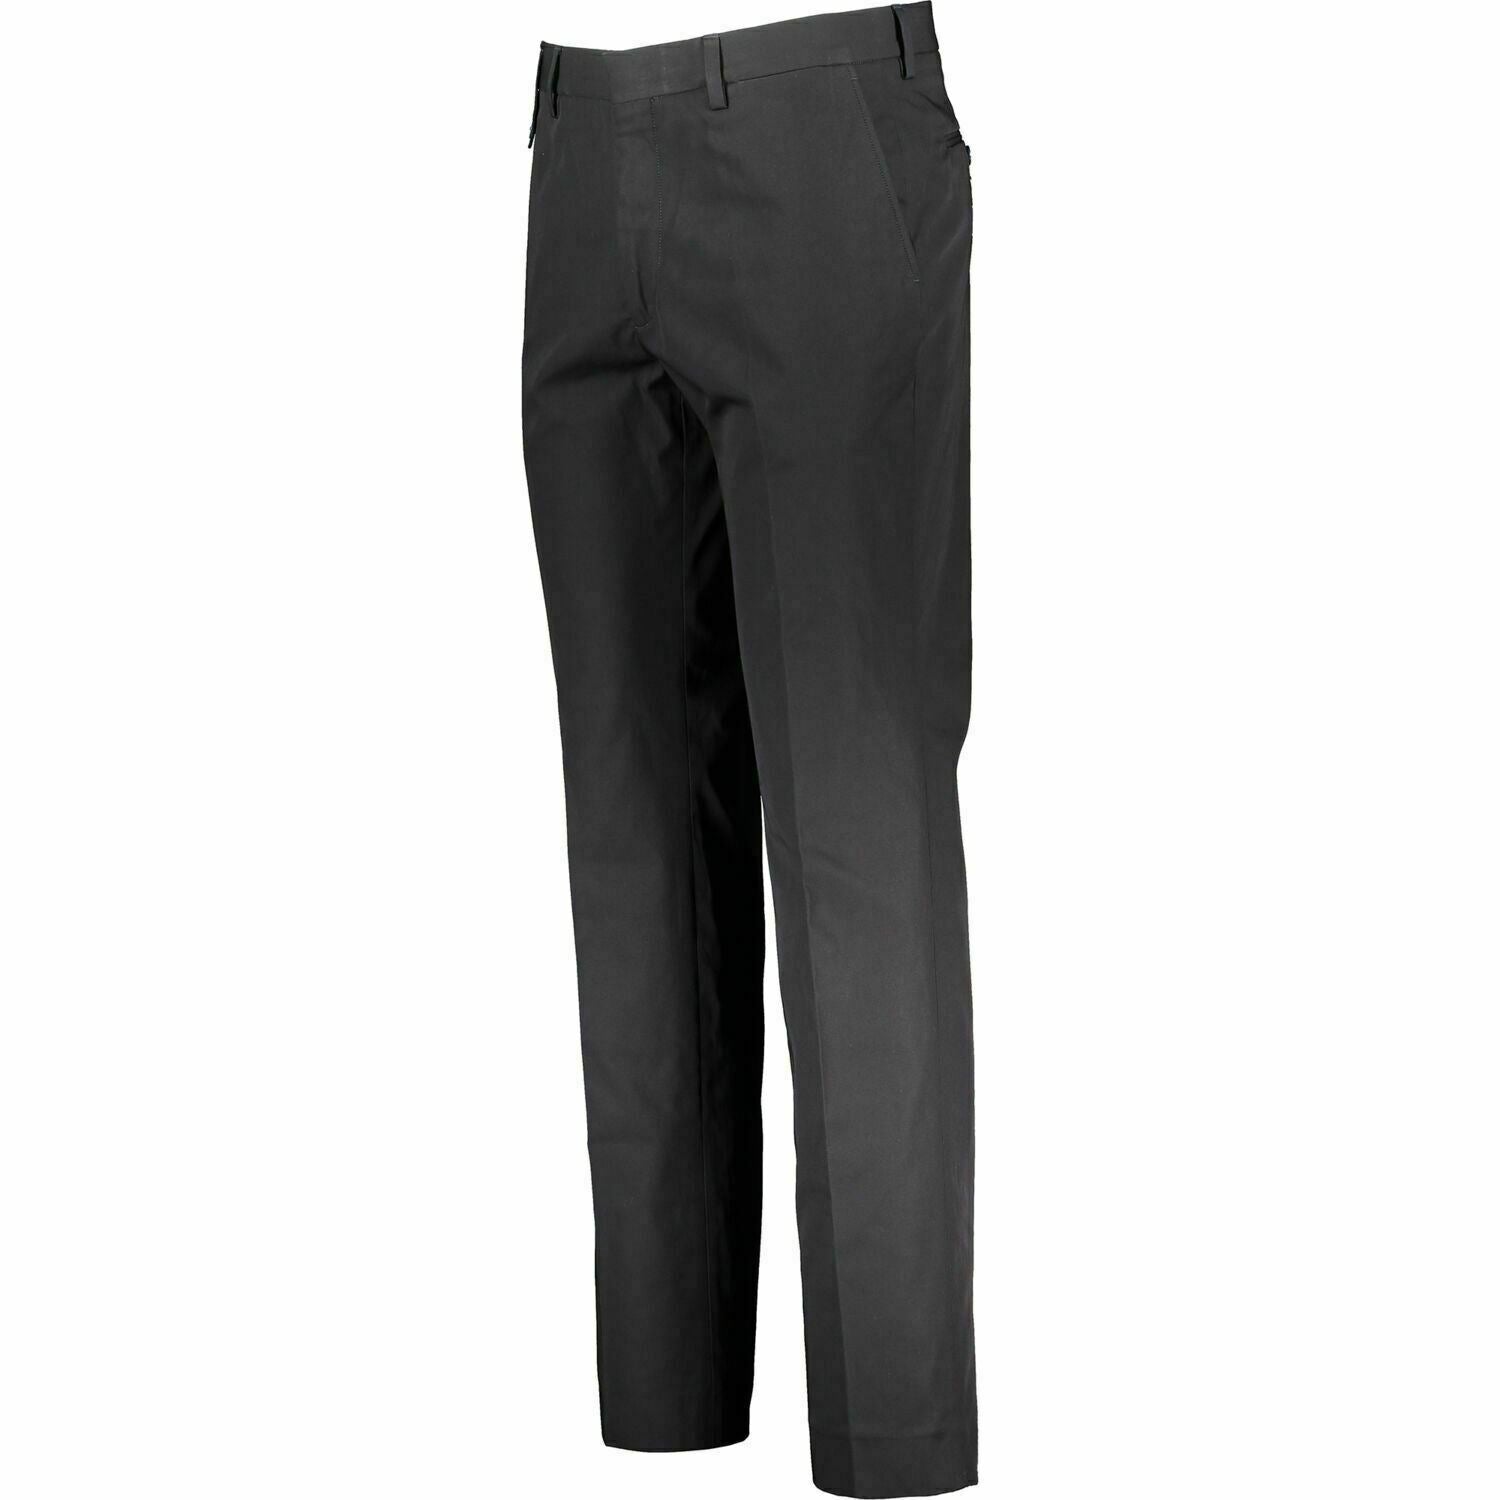 STELLA MCCARTNEY Men's Black Formal Slim Fit Trousers, size W28